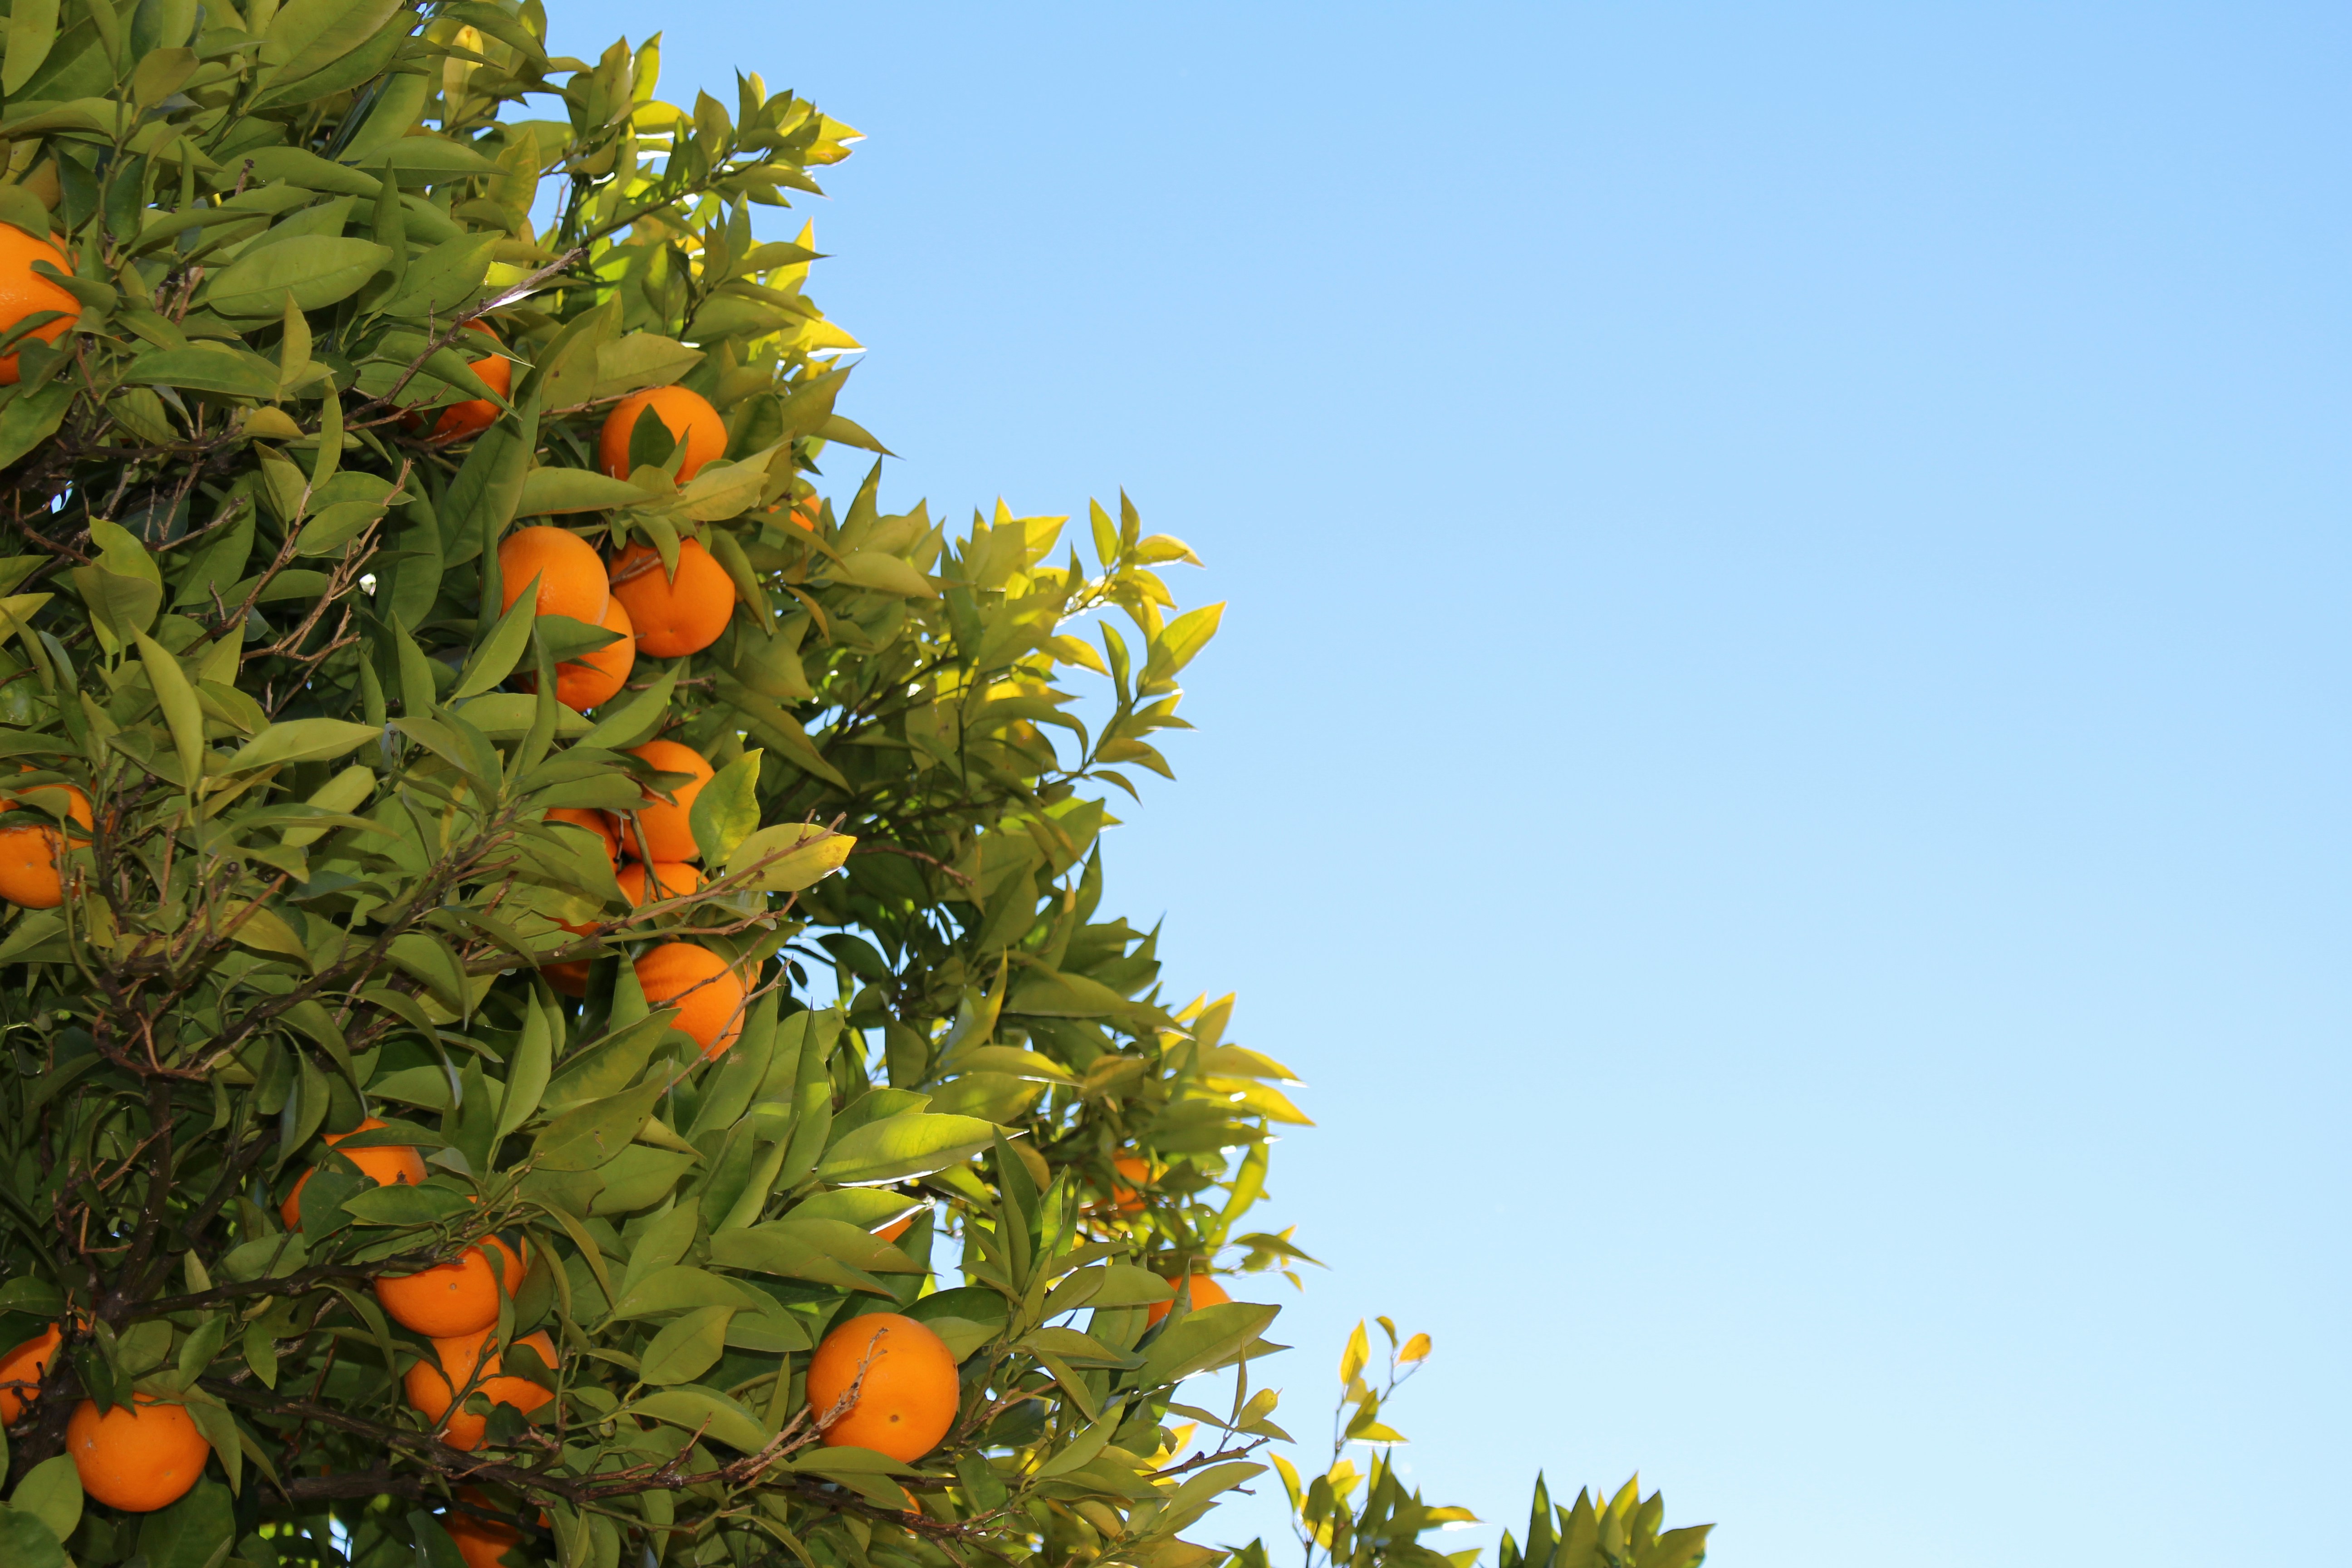 Cây cam là một trong những loại cây trồng rất phổ biến tại Việt Nam. Những hình ảnh về những hàng cây cam xanh tươi sẽ làm bạn liên tưởng đến cảnh đồng quê yên bình và tươi đẹp.